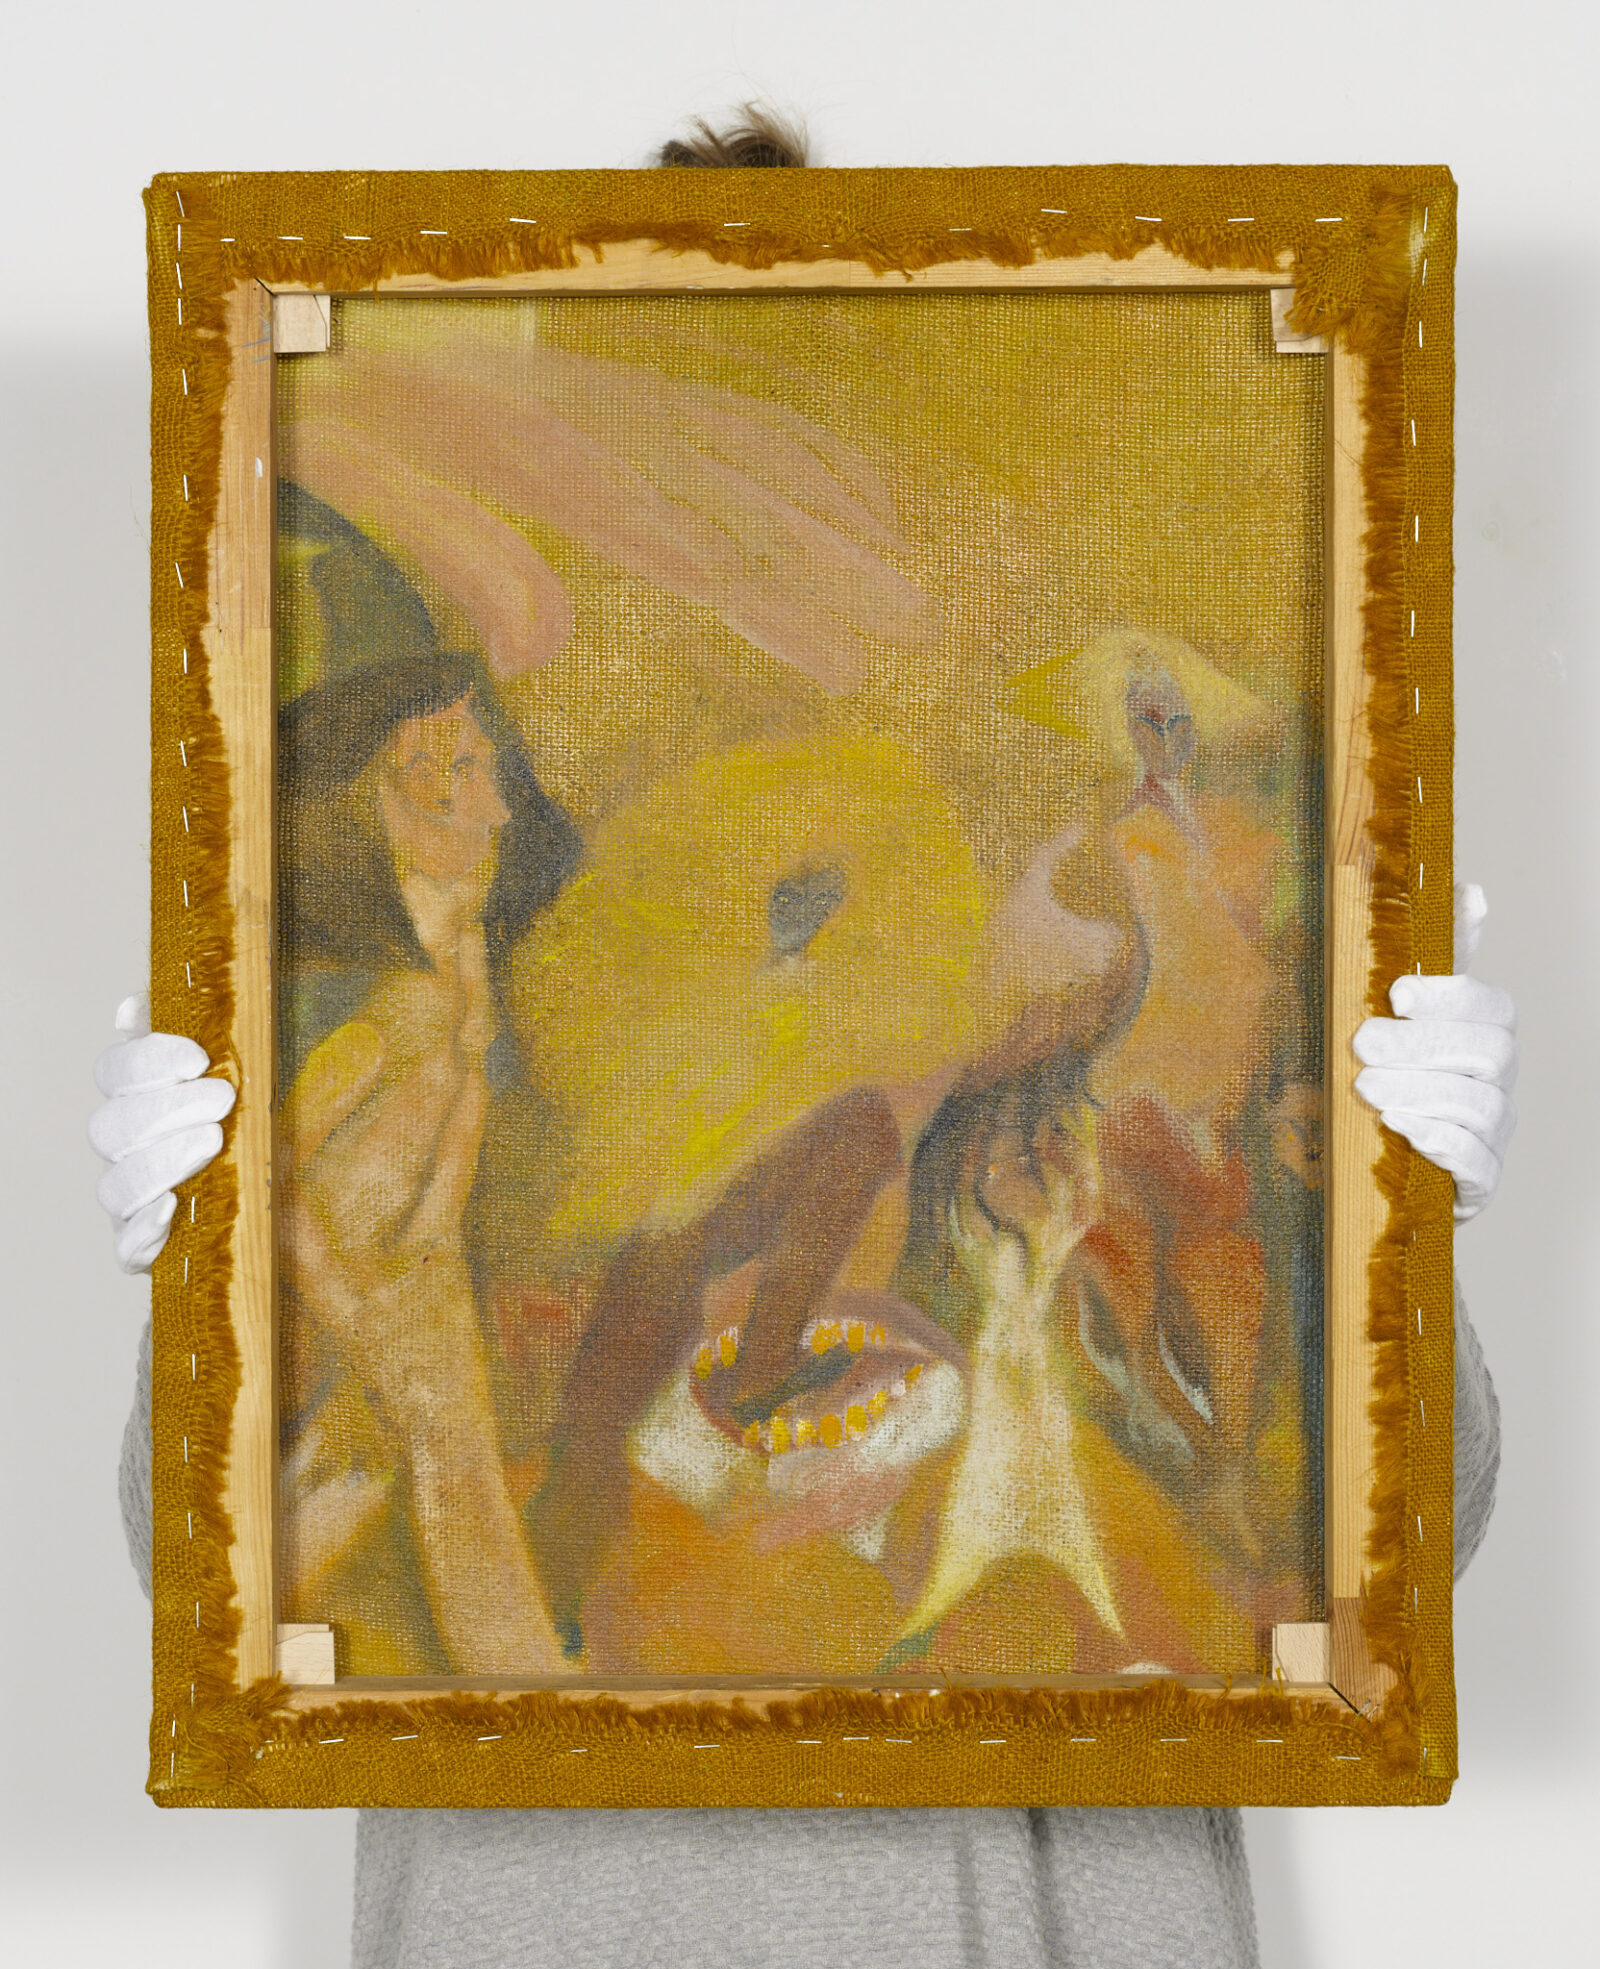 Tomasz Kowalski
Bez tytułu (Sejf), detal
2019
olej na barwionym płótnie
64 × 50 cm